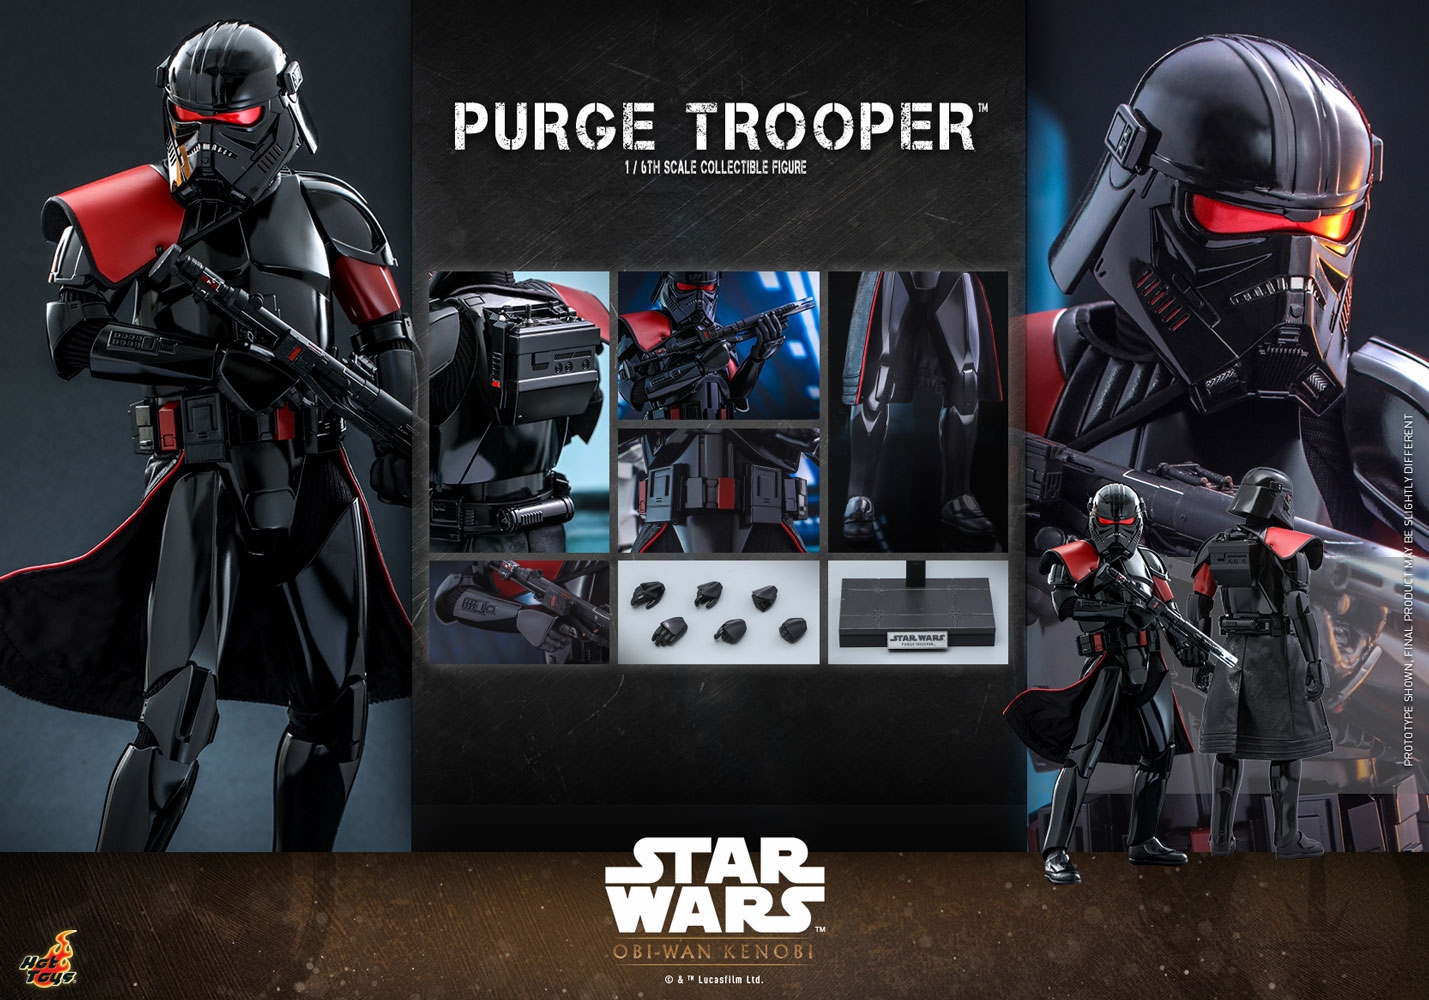 purge-trooper_star-wars_gallery_62bdd4f24a938.jpg